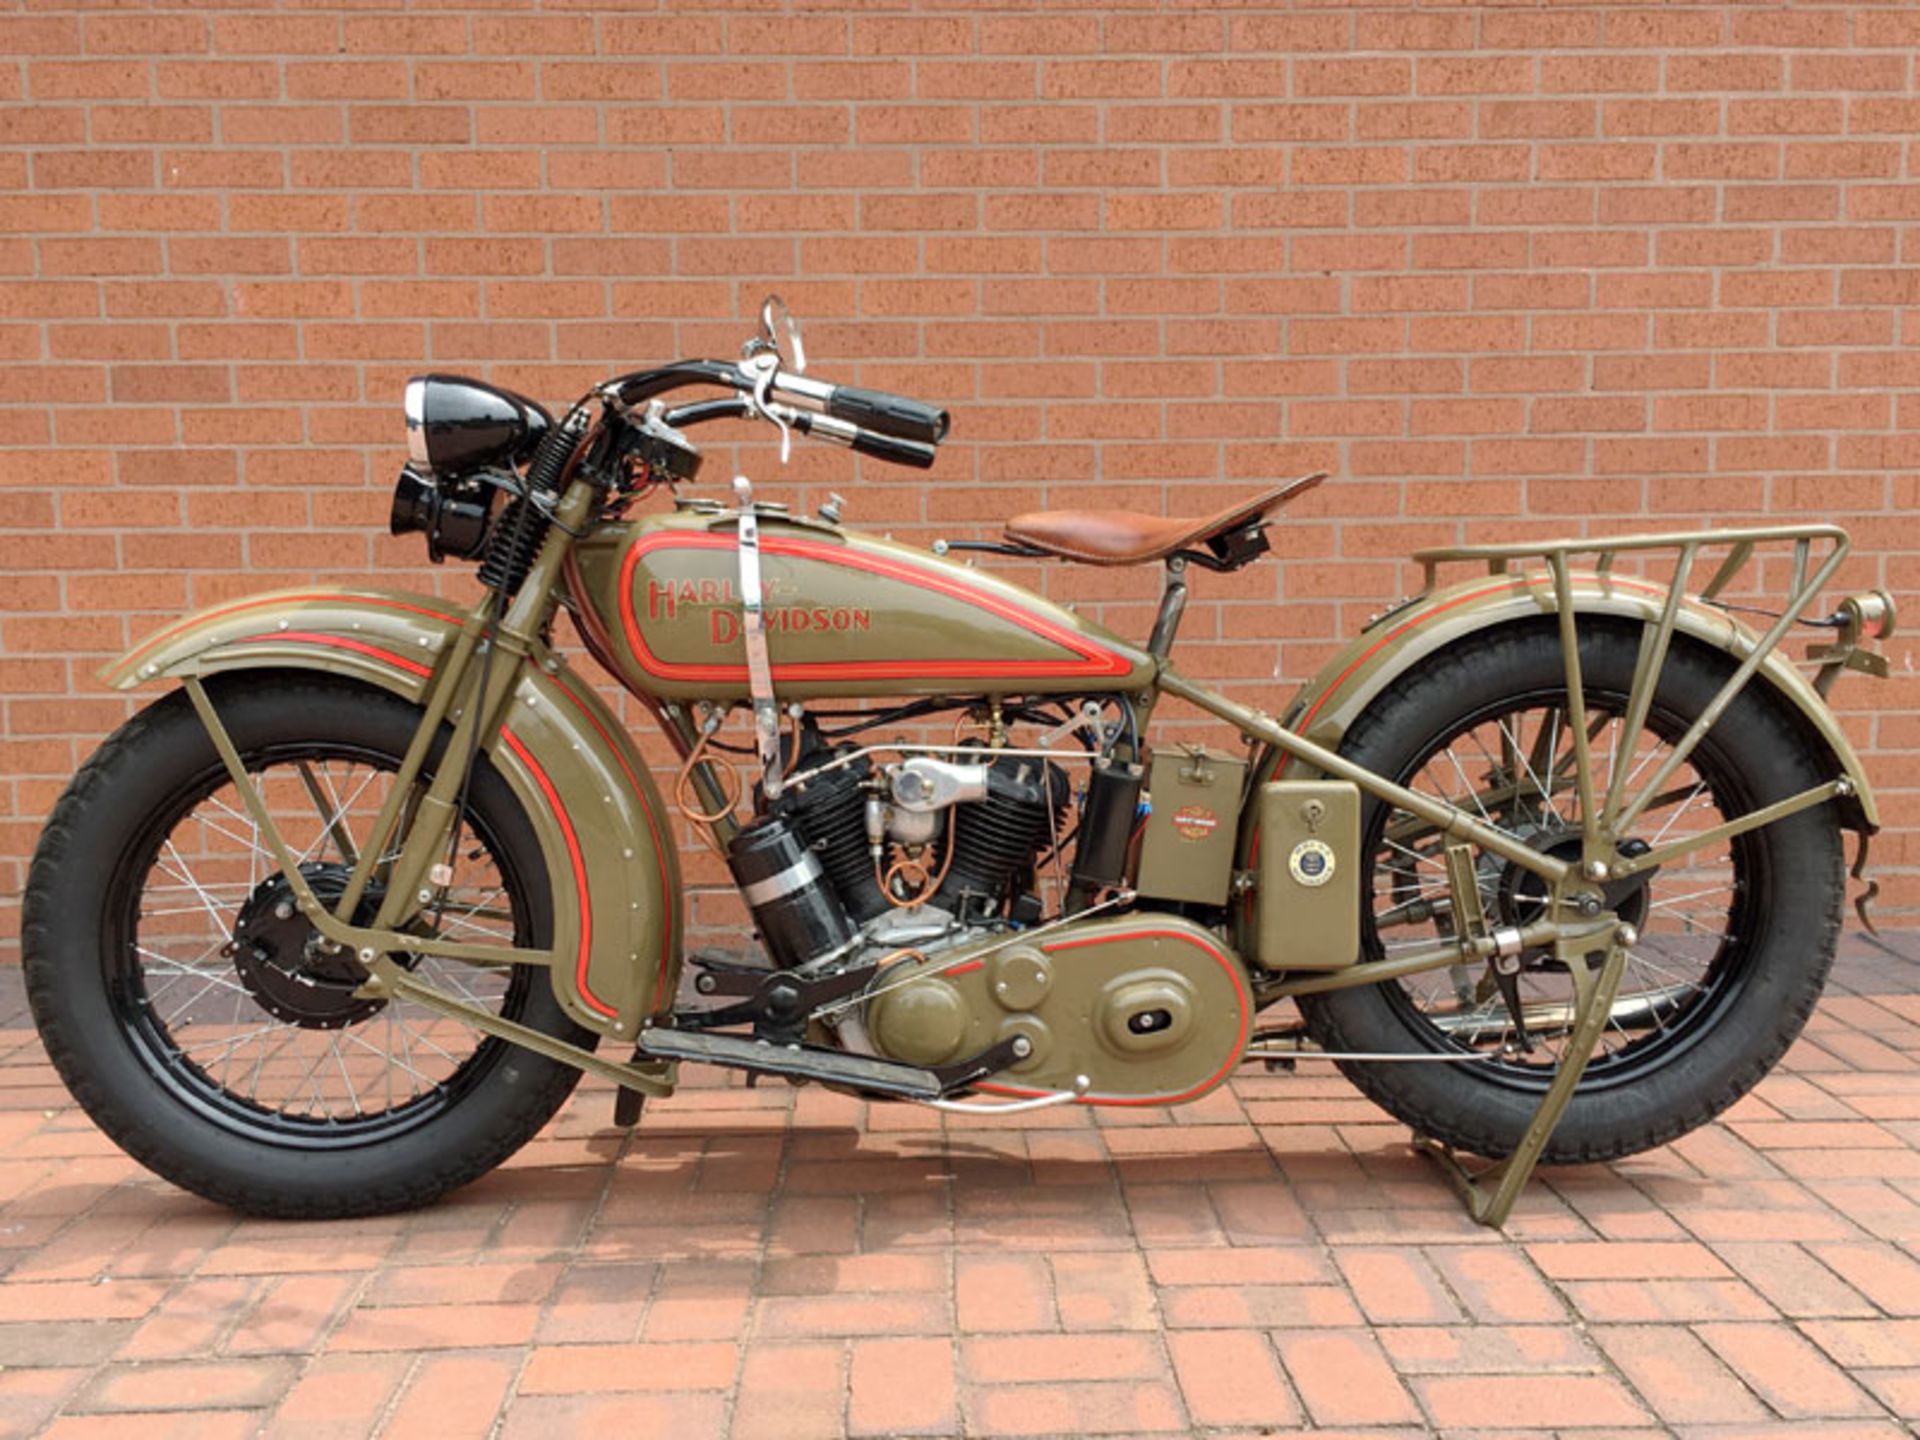 1929 Harley Davidson Model D - Image 2 of 6